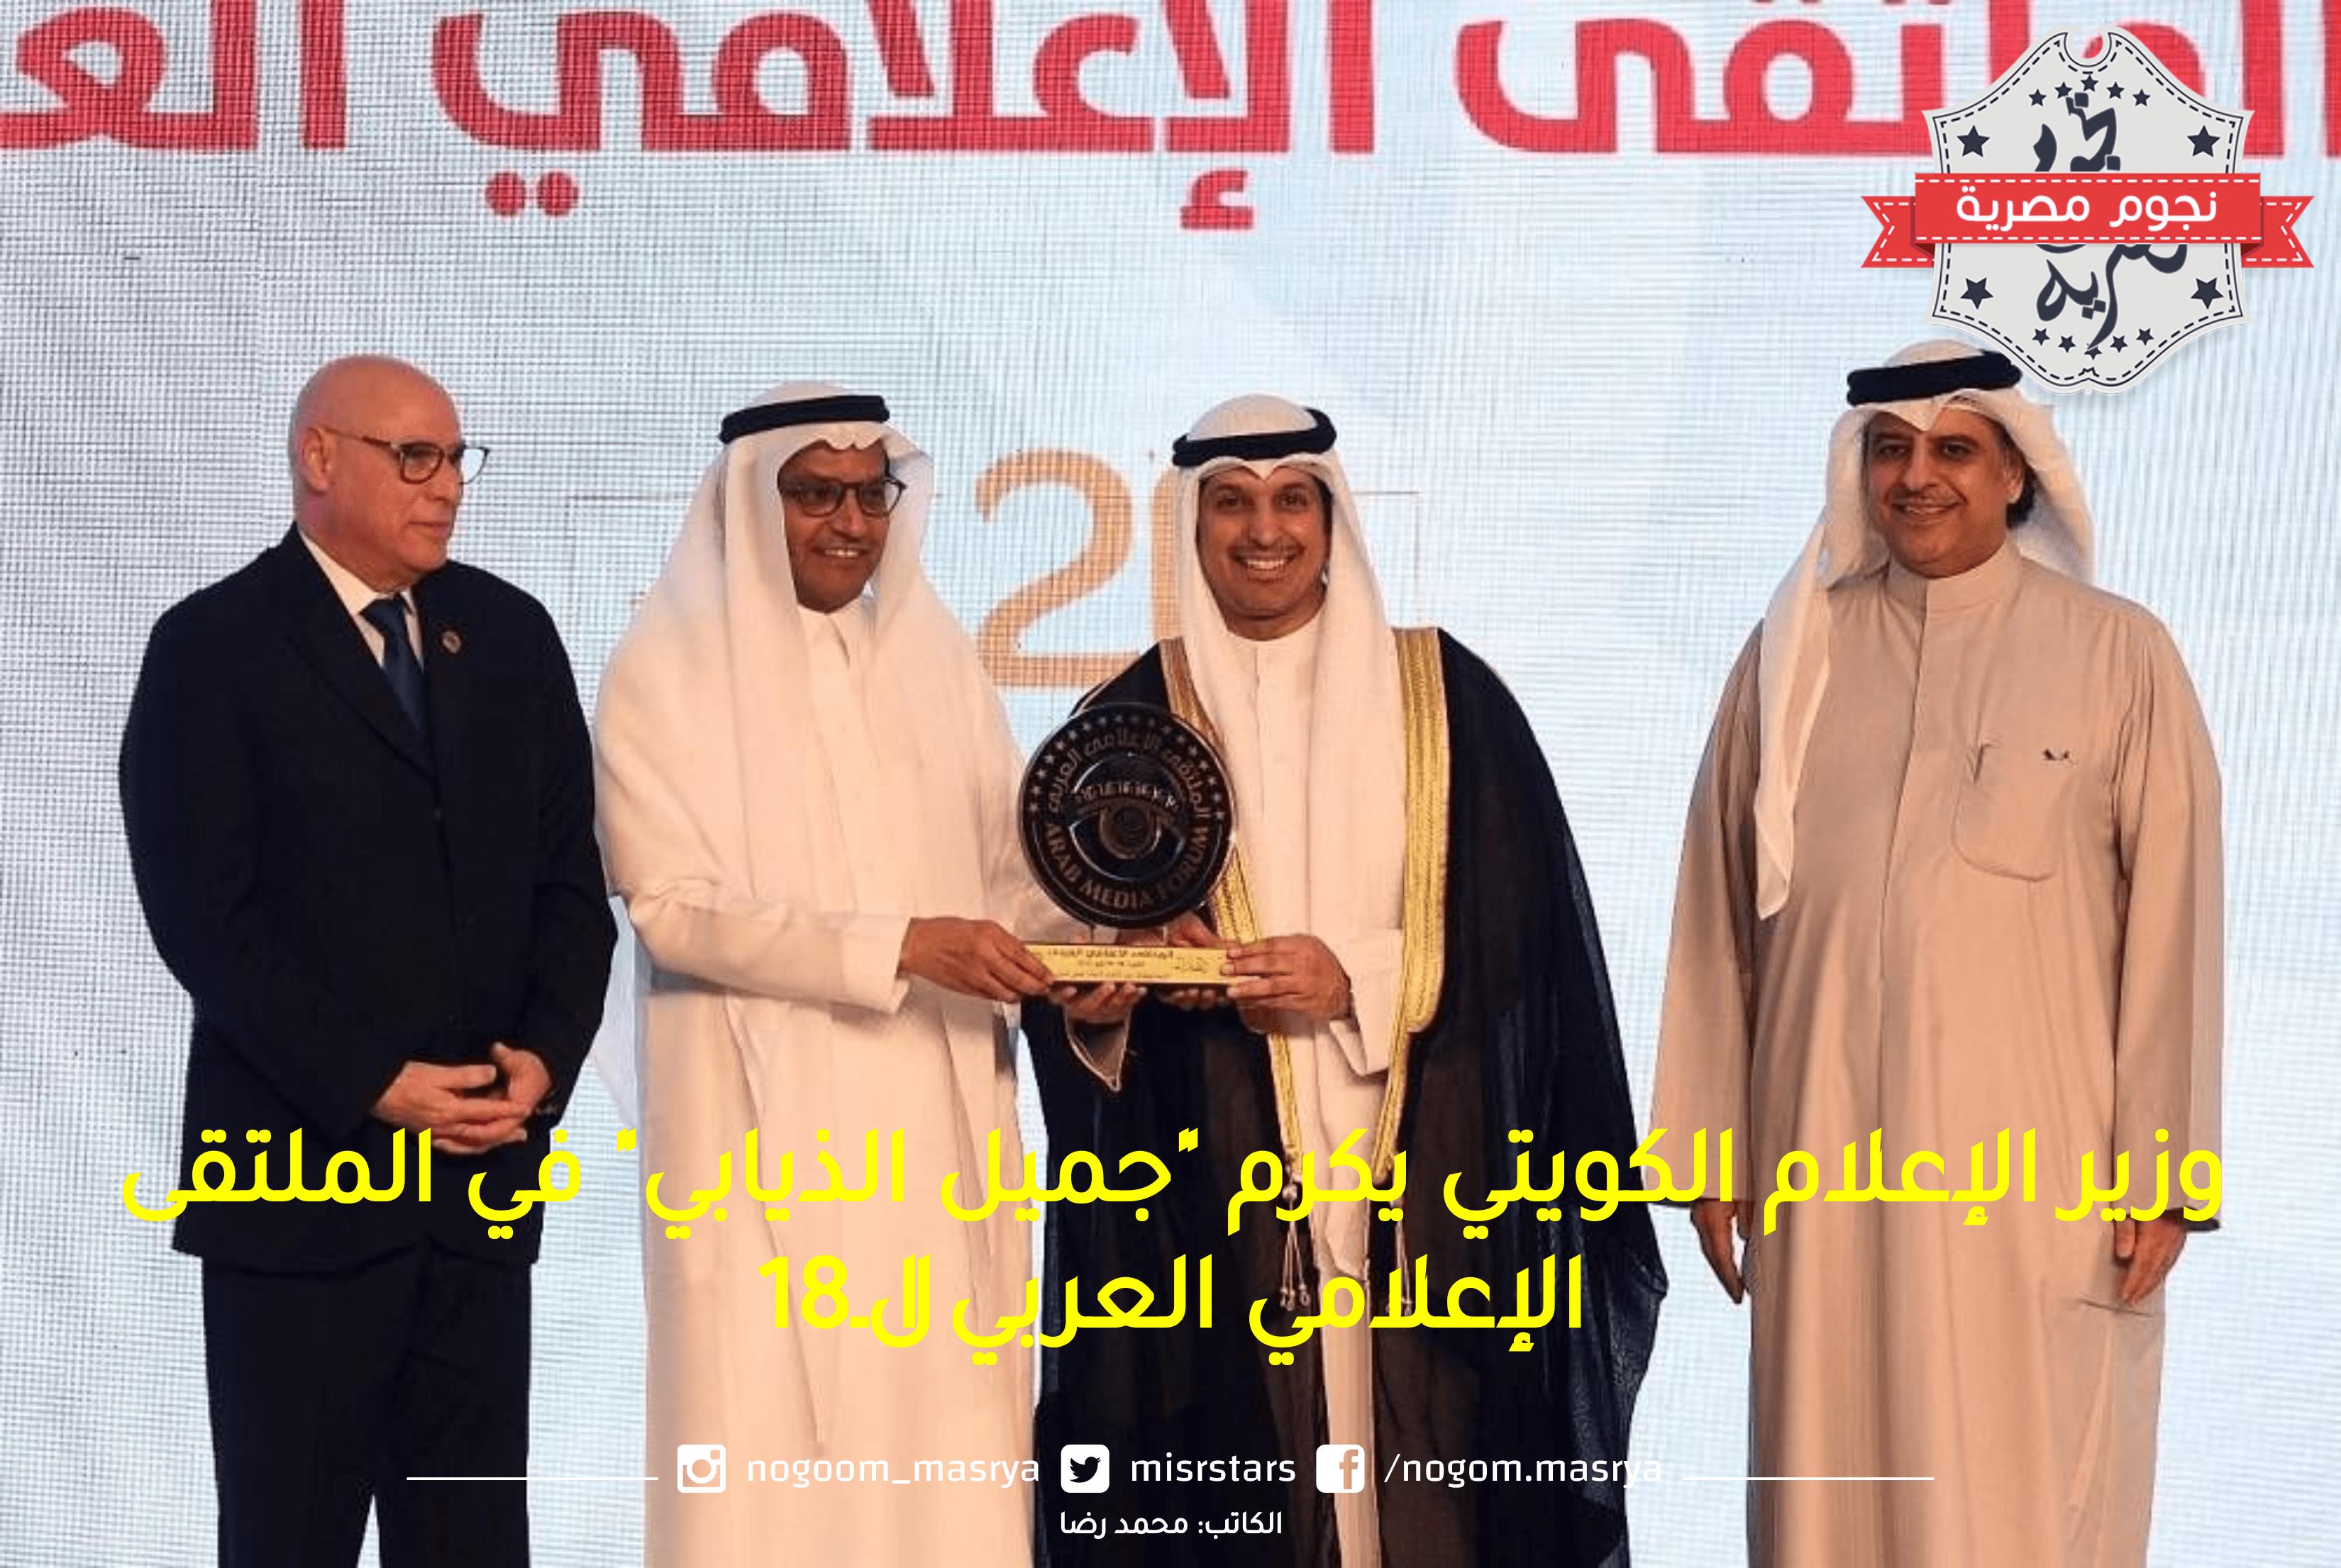 وزير الإعلام الكويتي يكرم “جميل الذيابي” في الملتقى الإعلامي العربي الـ18